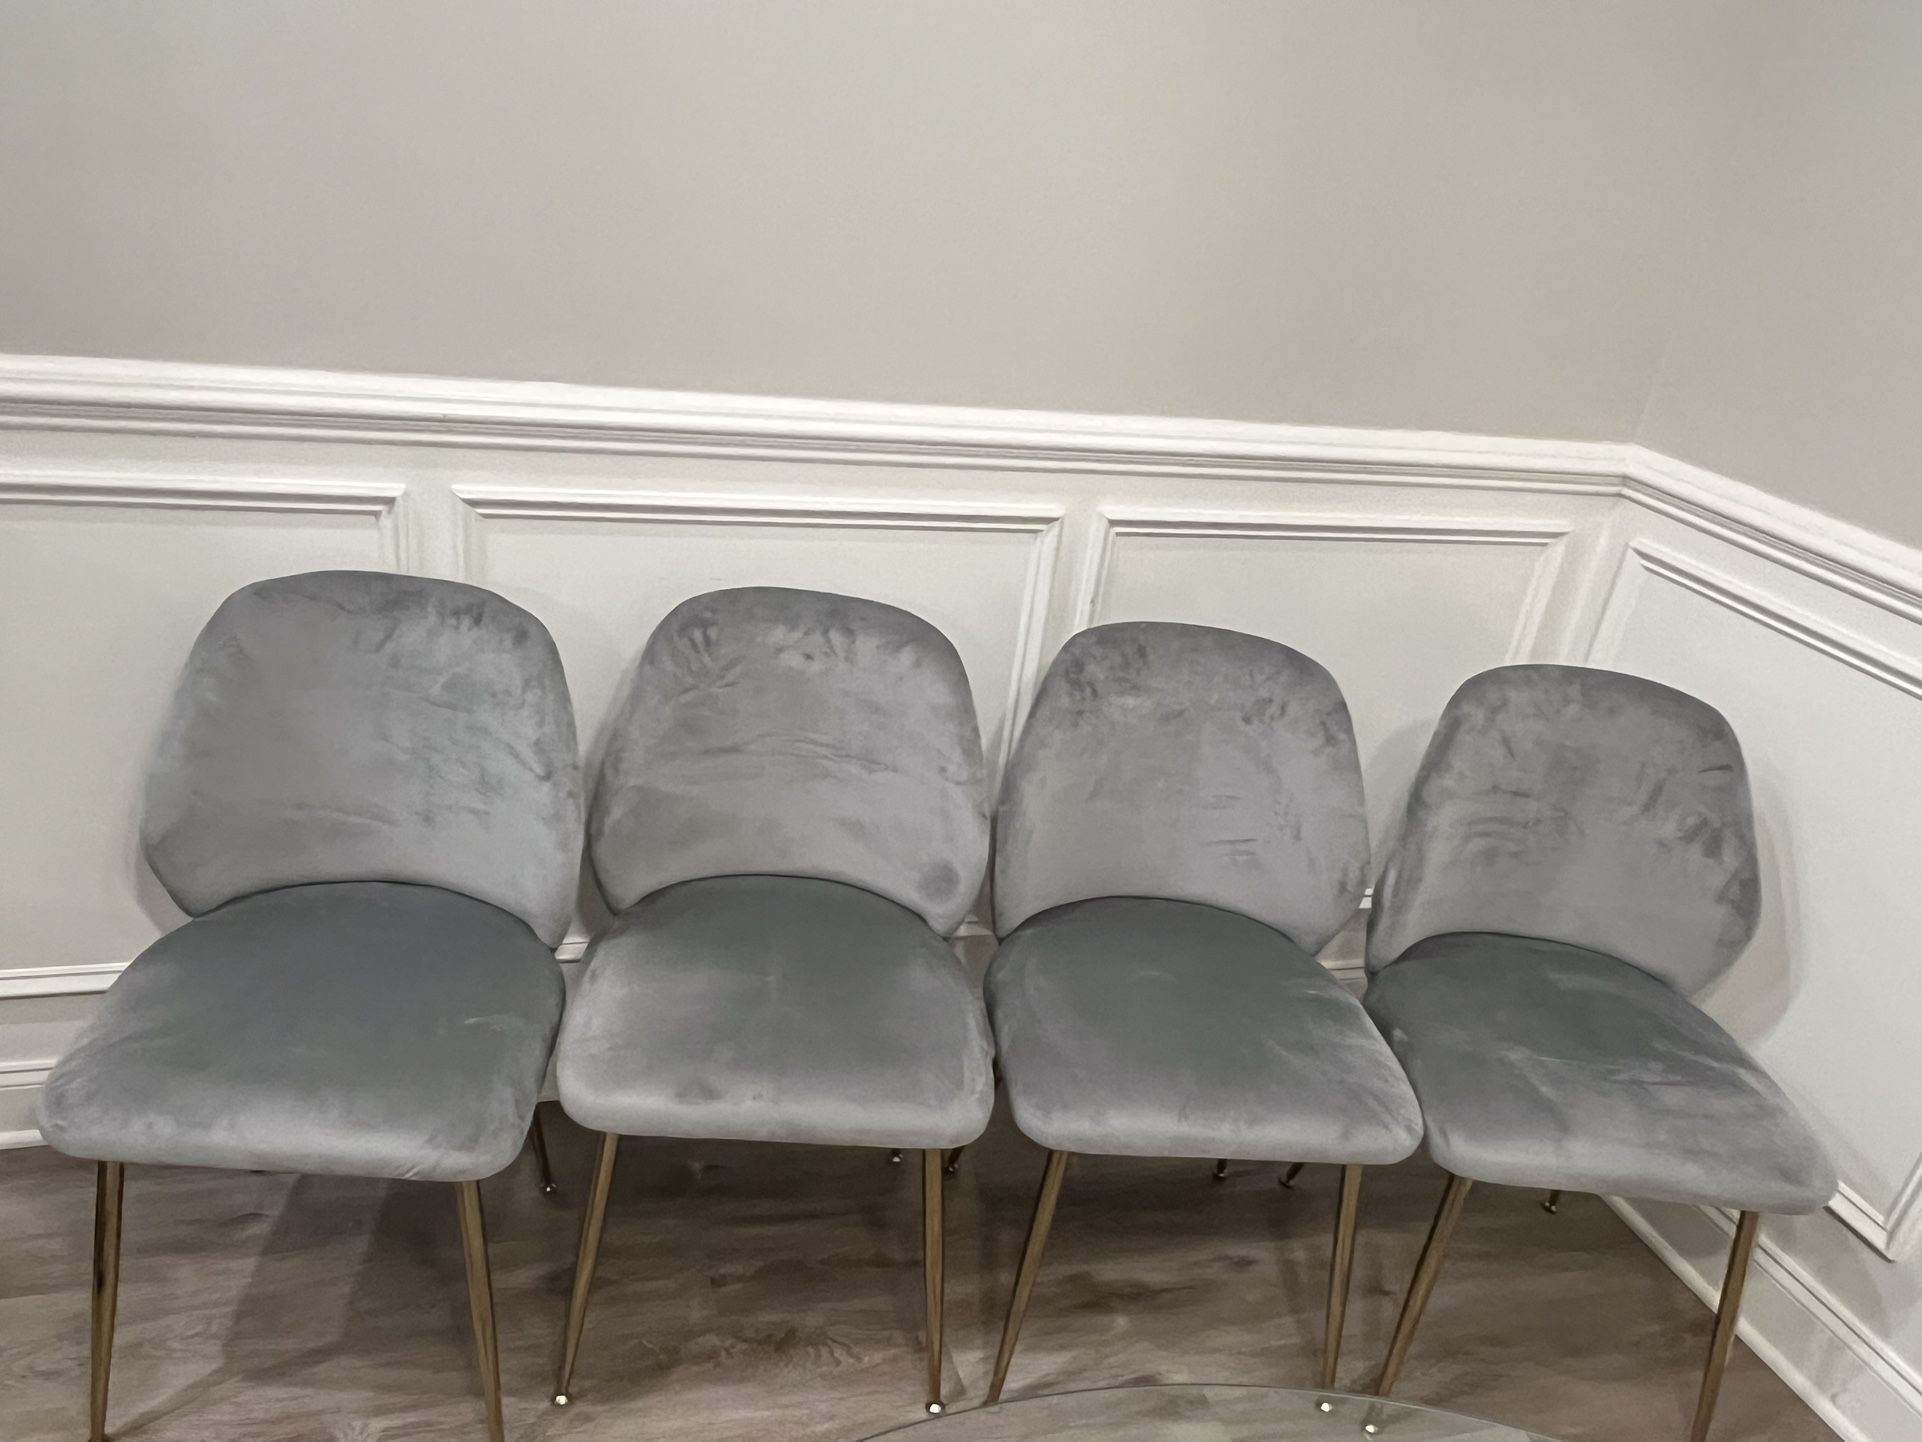 4 Chairs - Gray Velvet - Like New